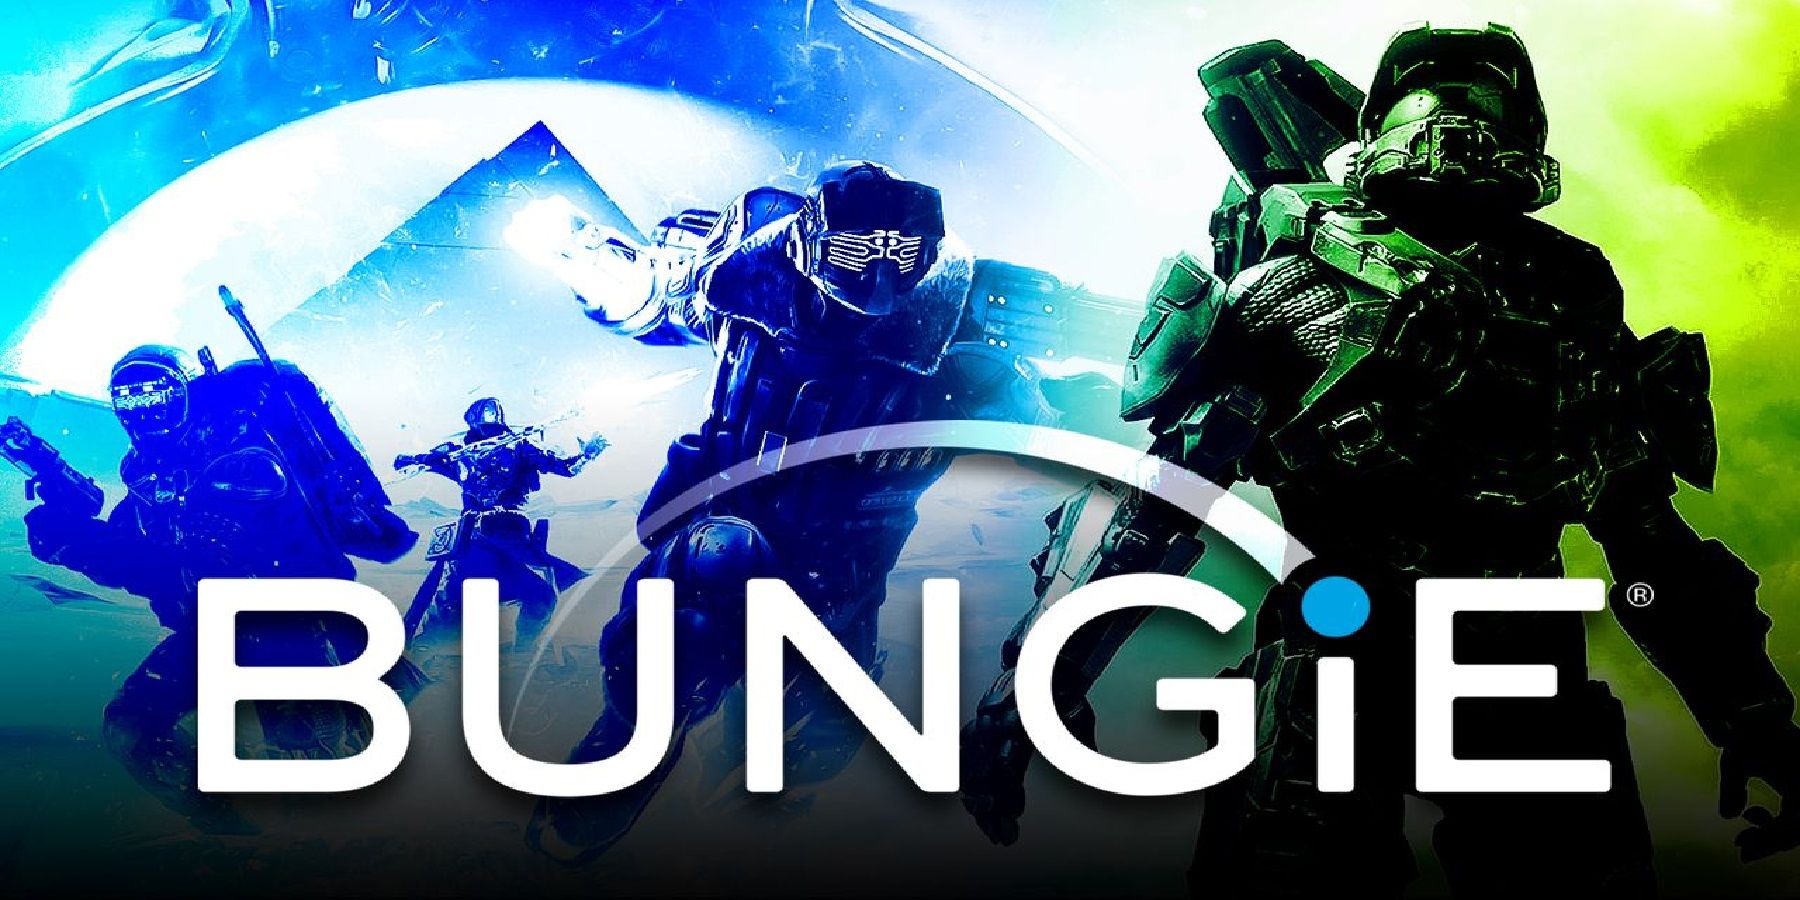 Bungie's Destiny 2 Follow Up может стать еще одной соревновательной игрой с онлайн-сервисом